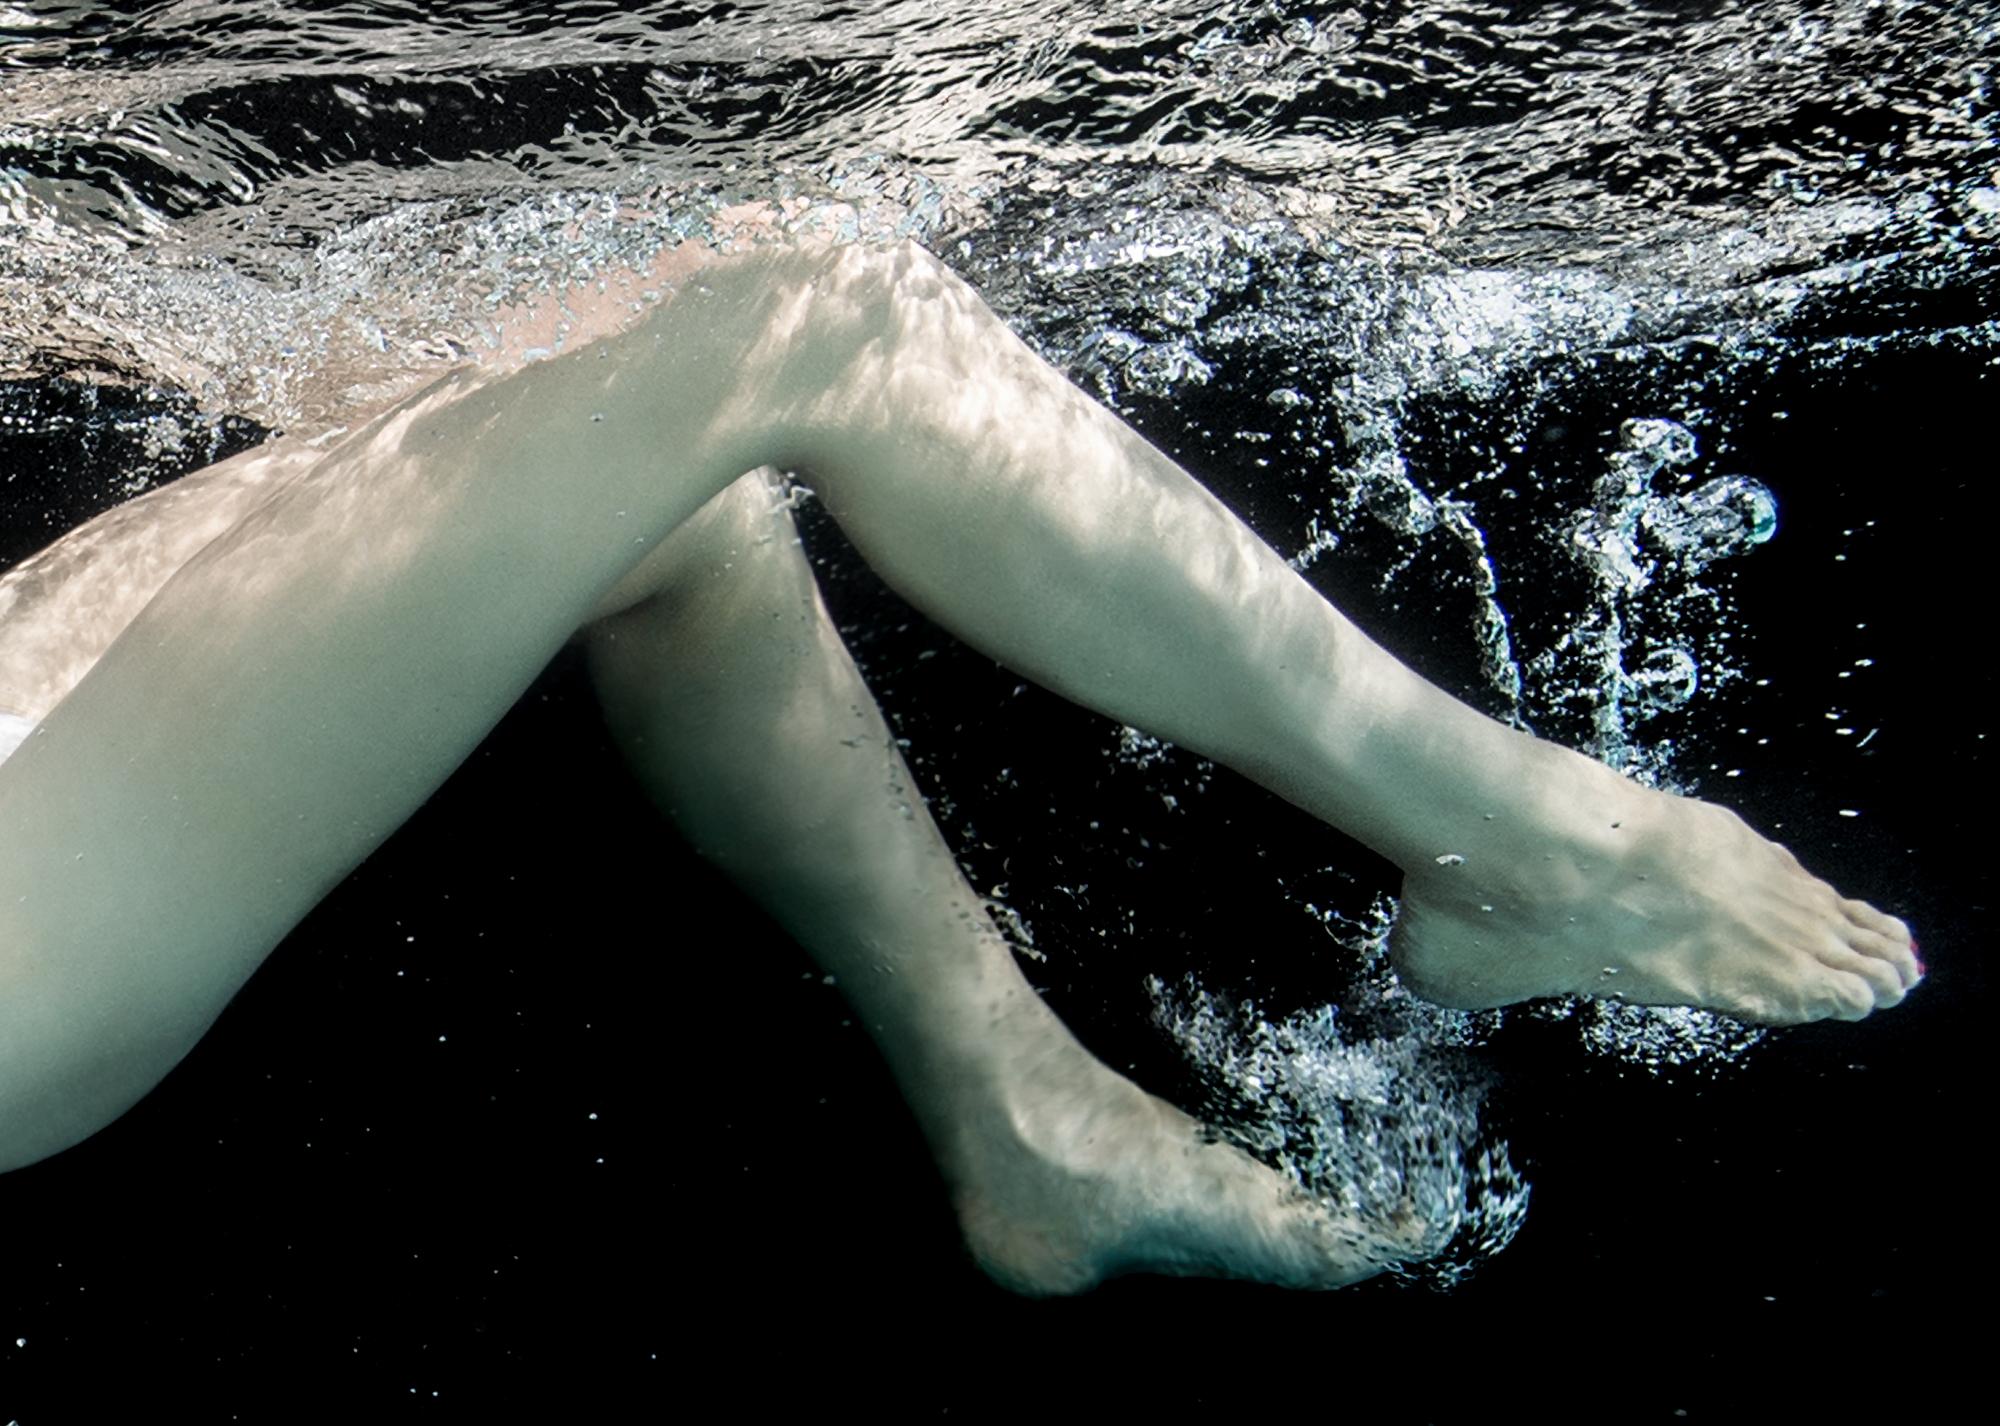 Ballet - photographie de nu sous-marine en noir et blanc - pigment d'archives 27